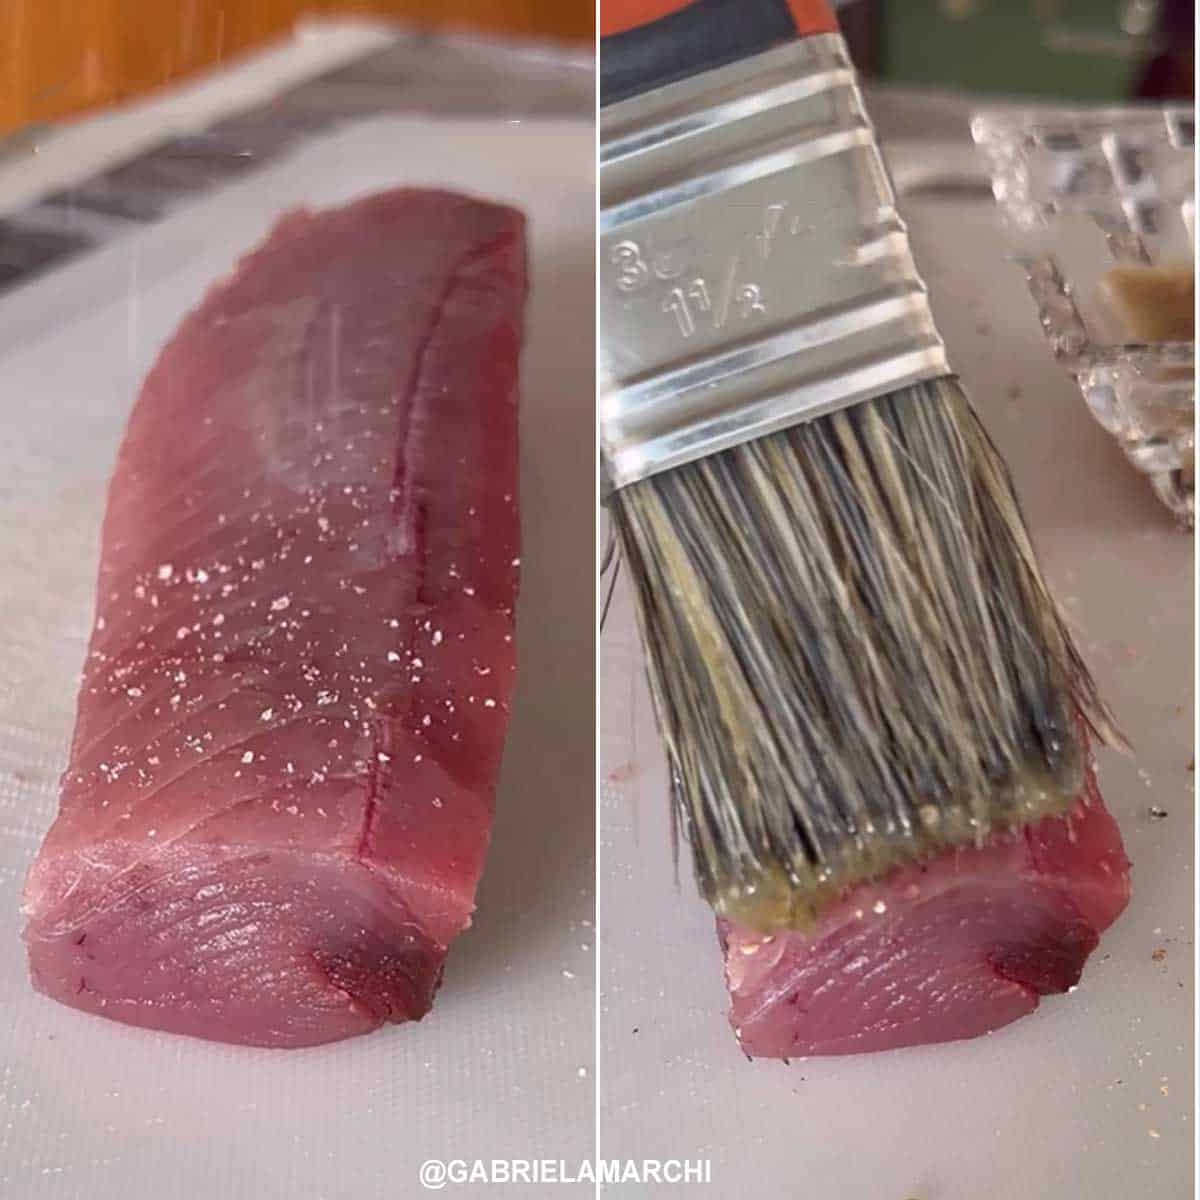 picando e preparando o atum selado